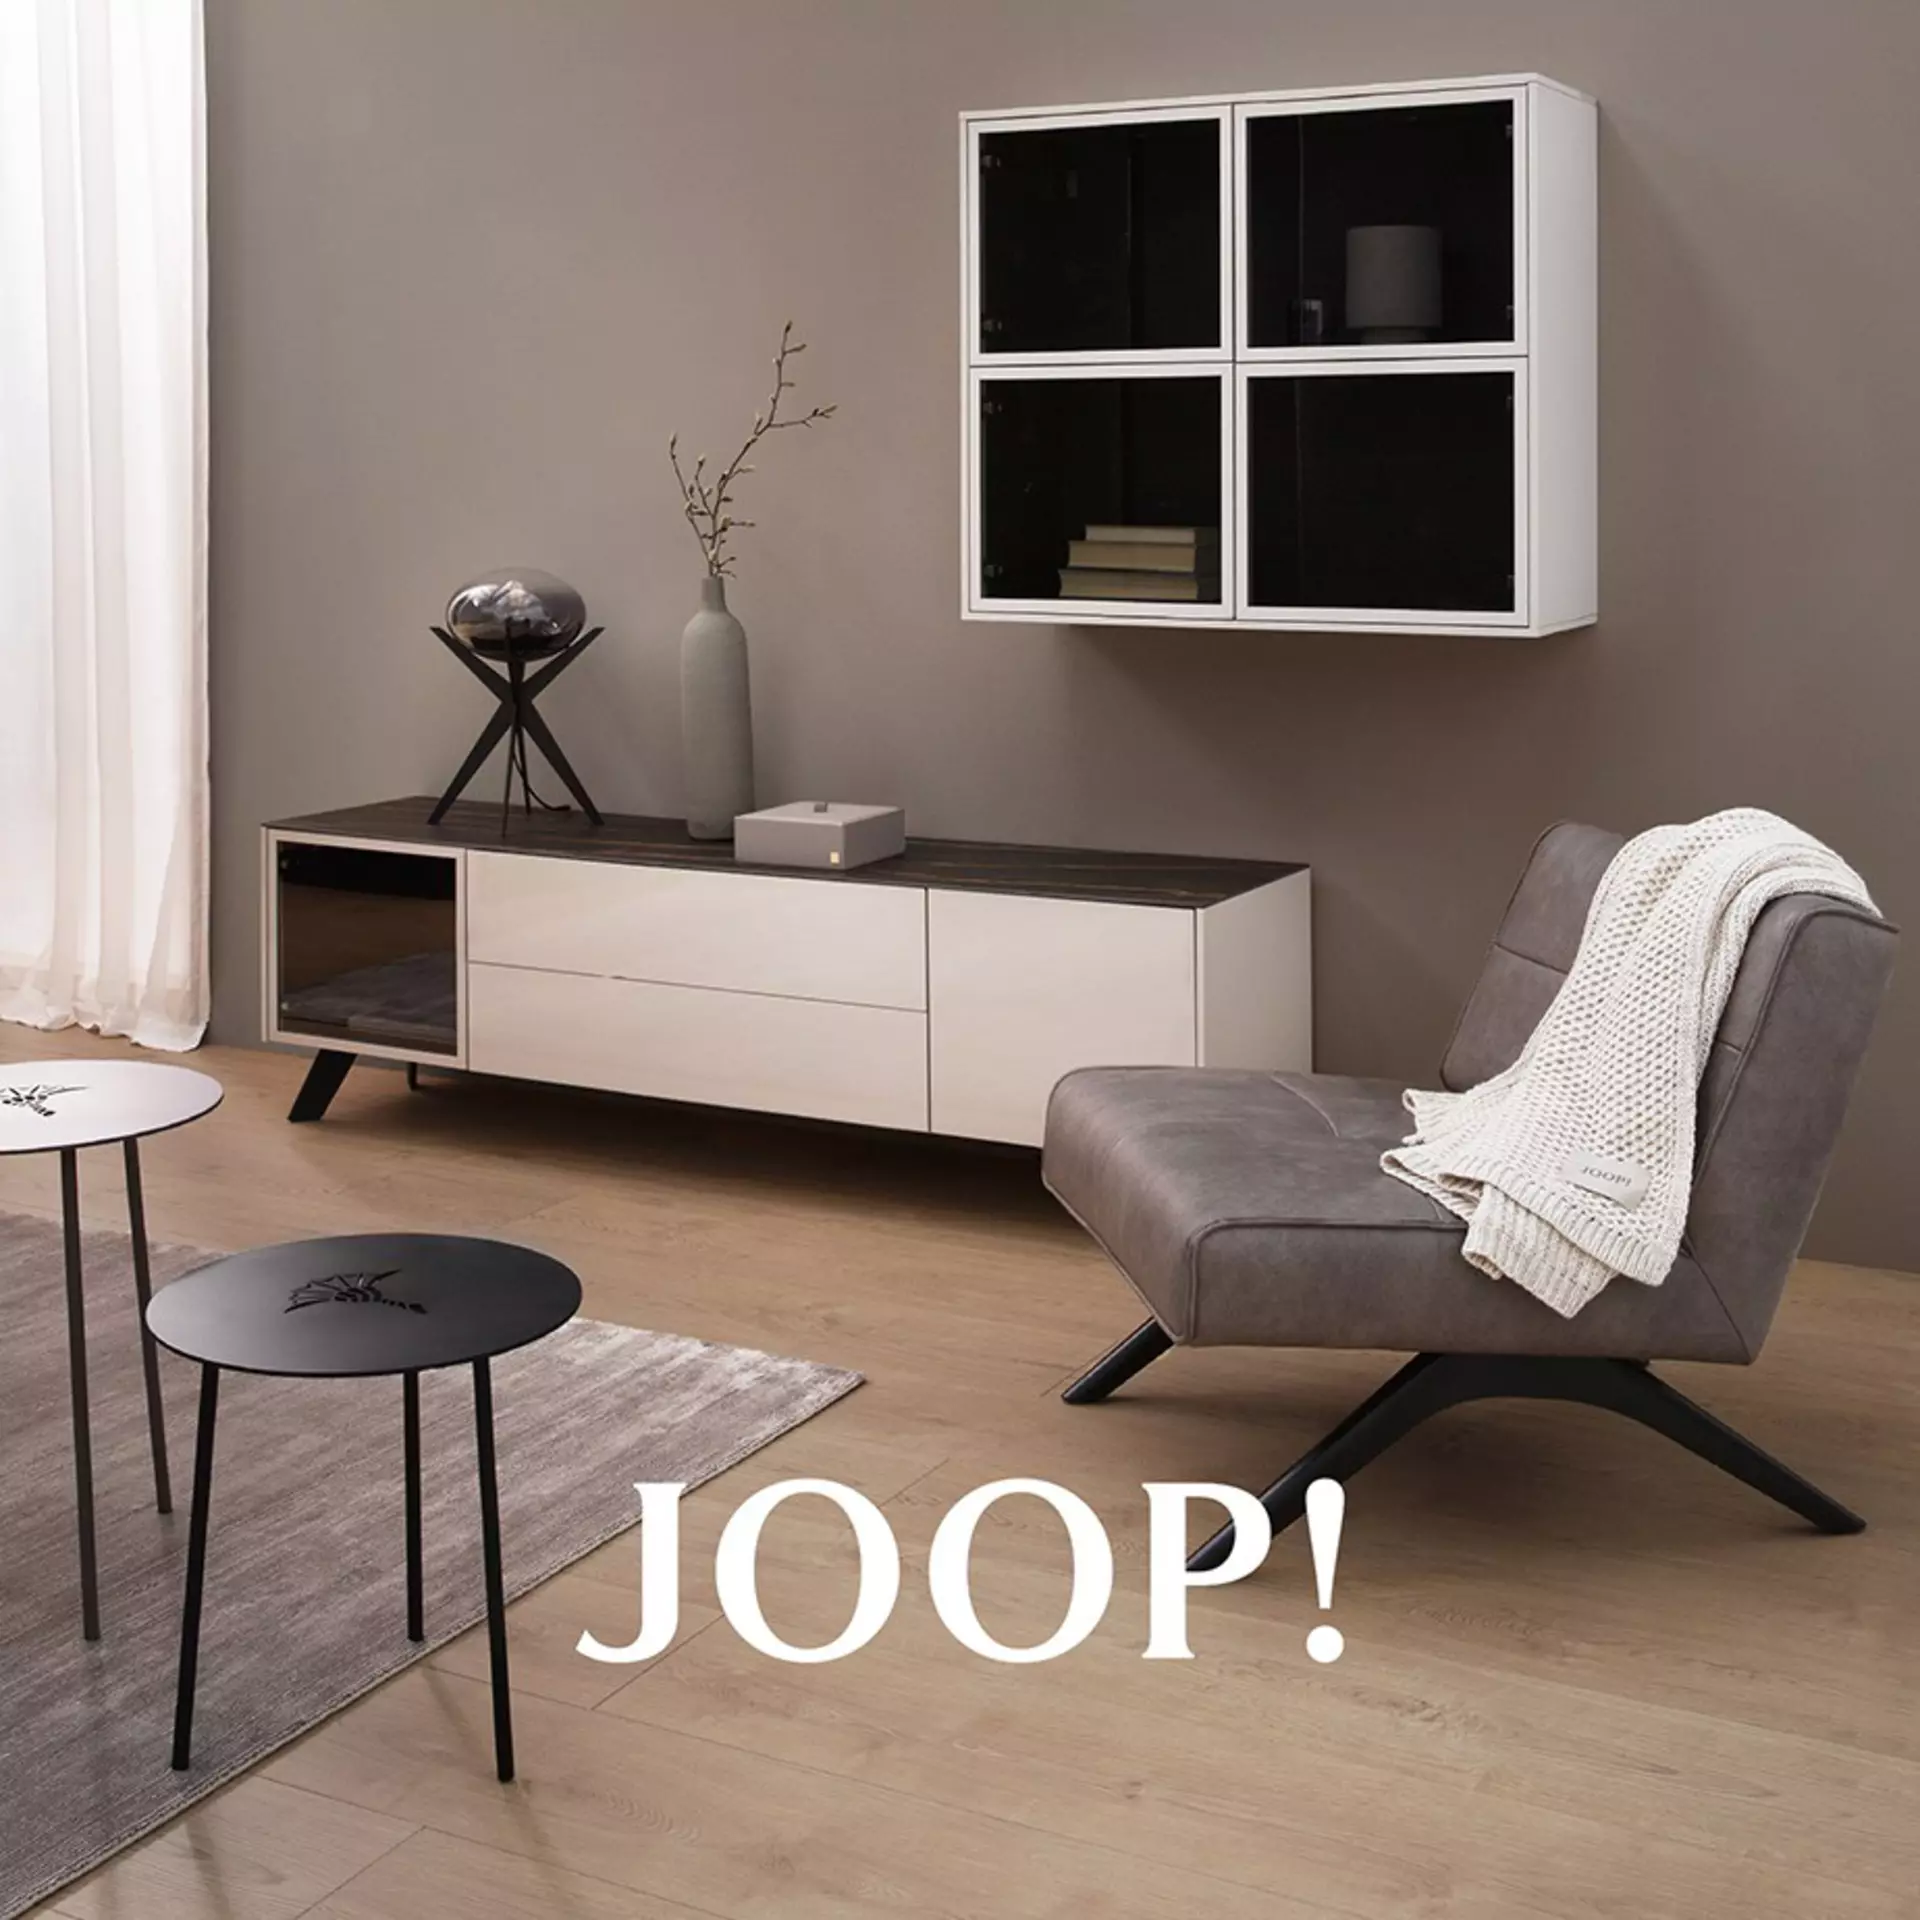 JOOP! das Lifestyle Label bei Möbel Inhofer